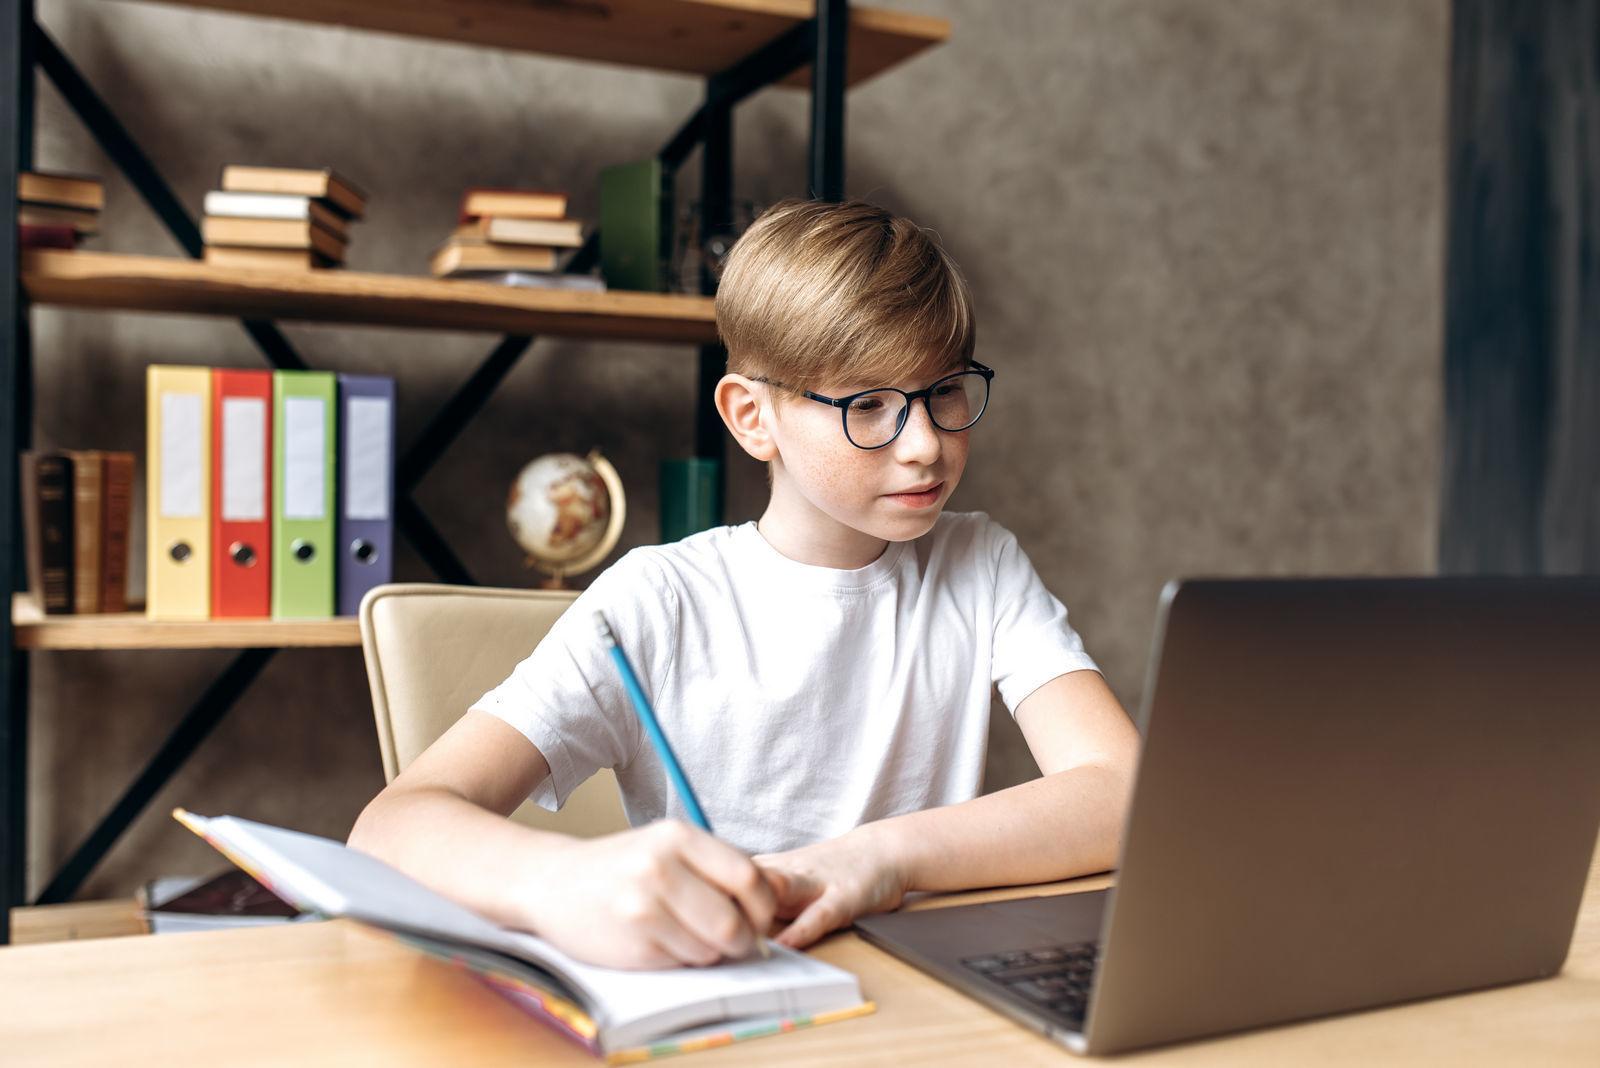 мальчик в очках сидит за учебным столом и делает домашнее задание учится